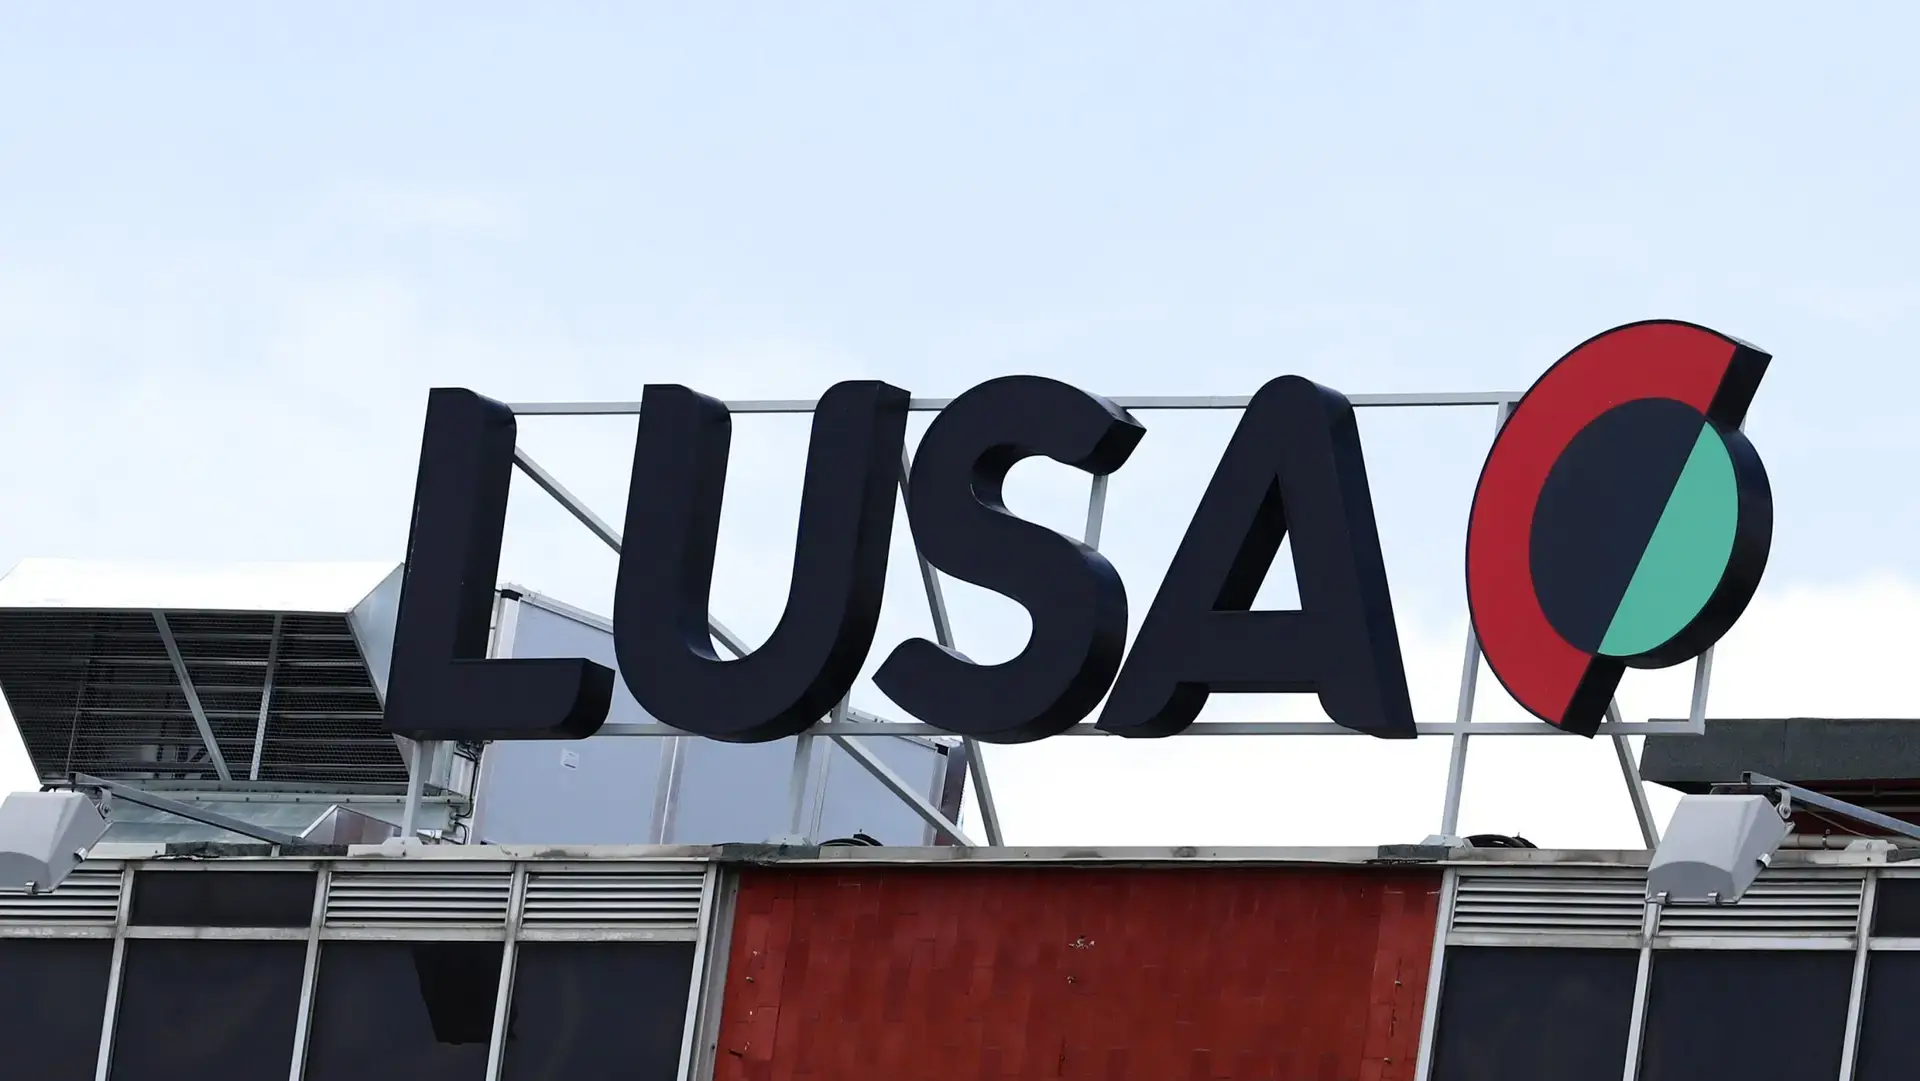 Agência Lusa inicia greve de quatro dias